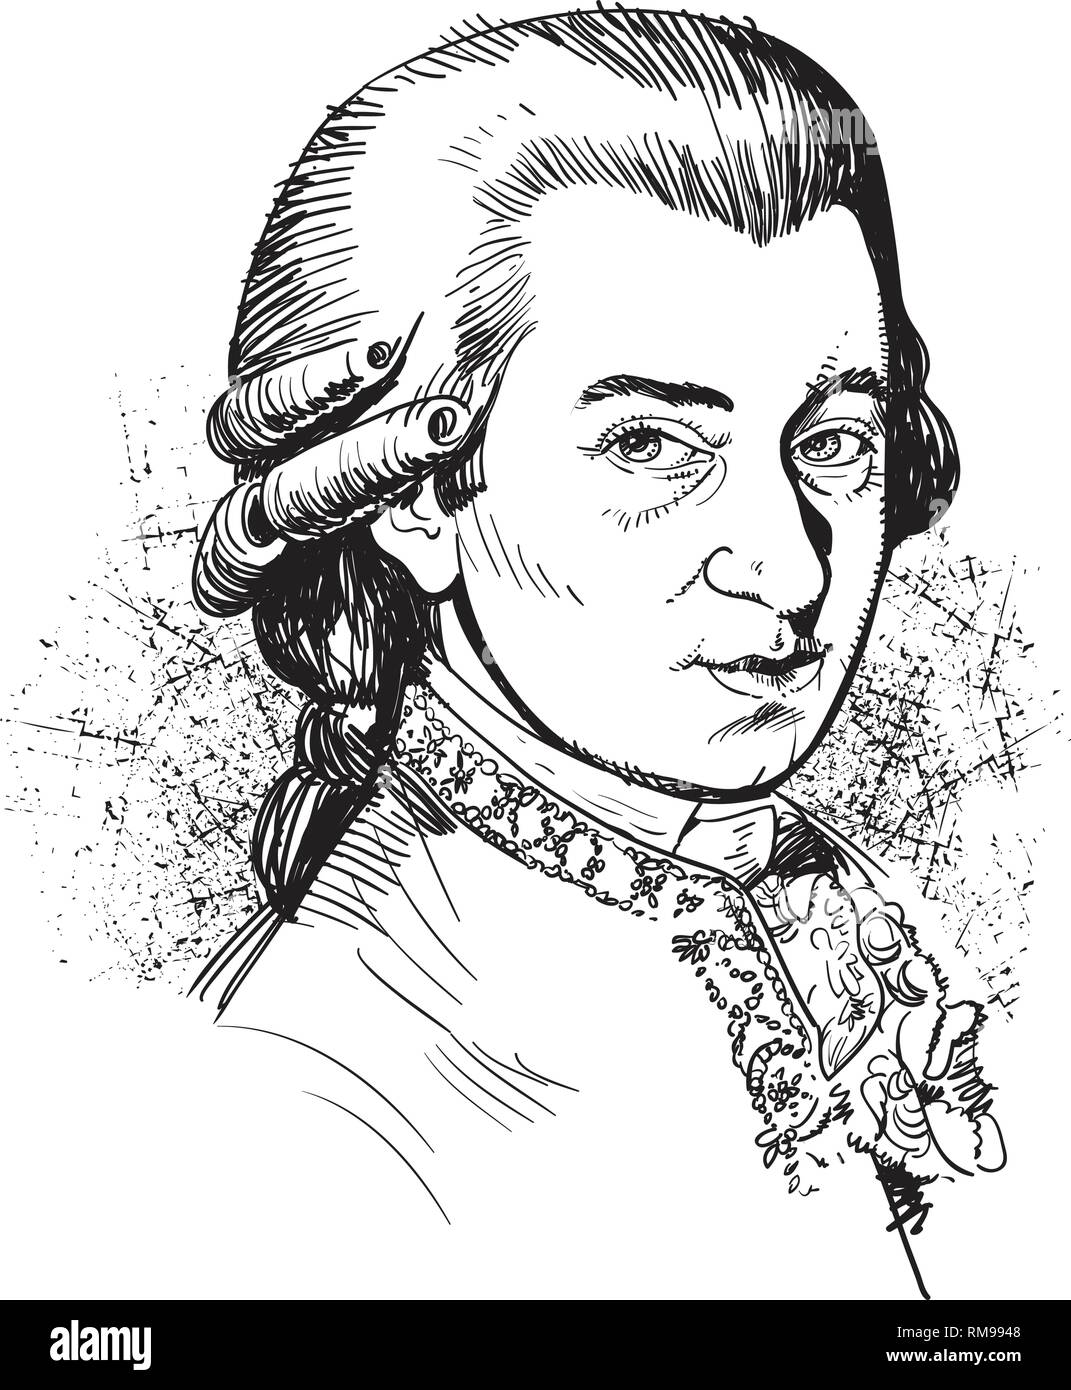 Wolfgang Amadeus Mozart ritratto in linea tecnica illustrazione. Egli fu prolifico e influente compositore di musica classica era. Illustrazione Vettoriale